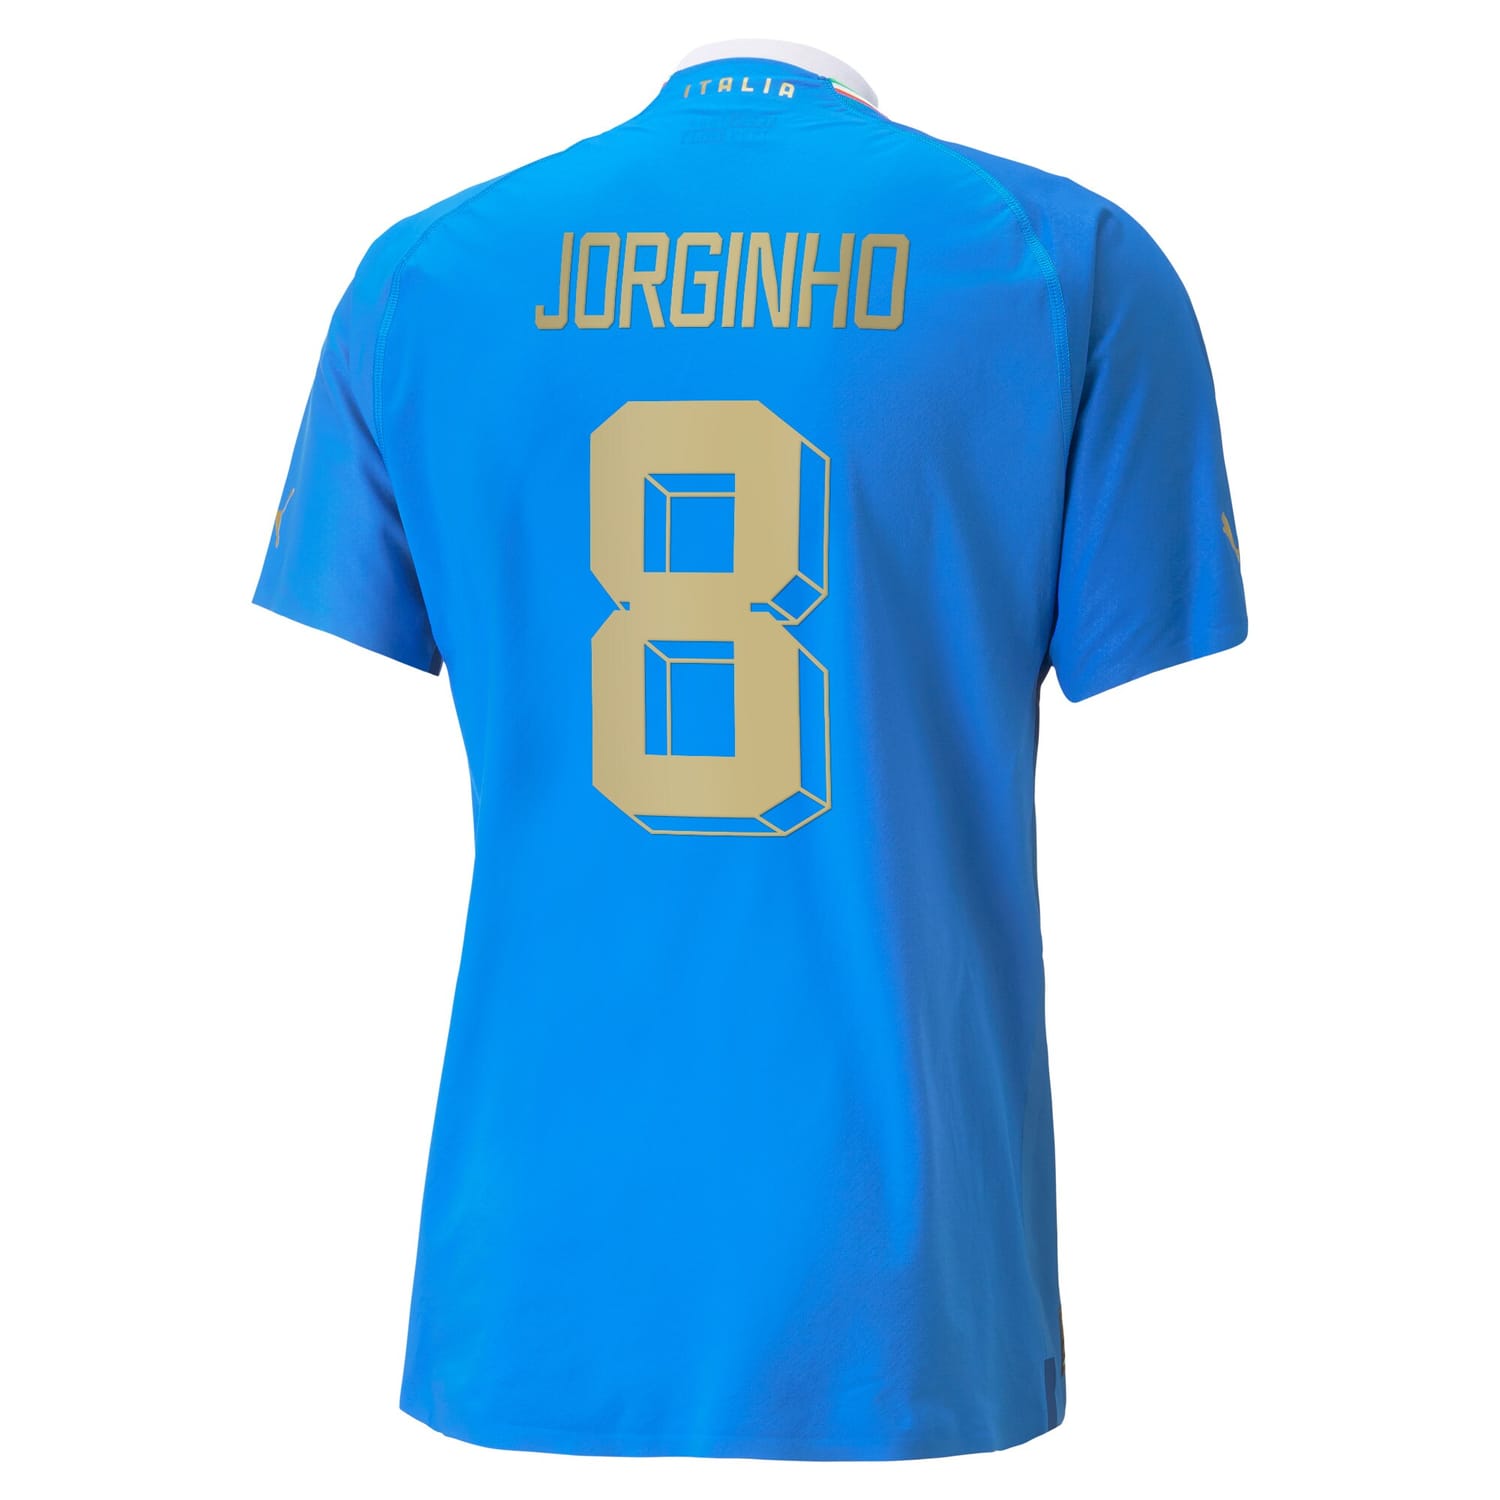 Italy National Team Home Authentic Jersey Shirt Blue 2022-23 player Jorginho printing for Men